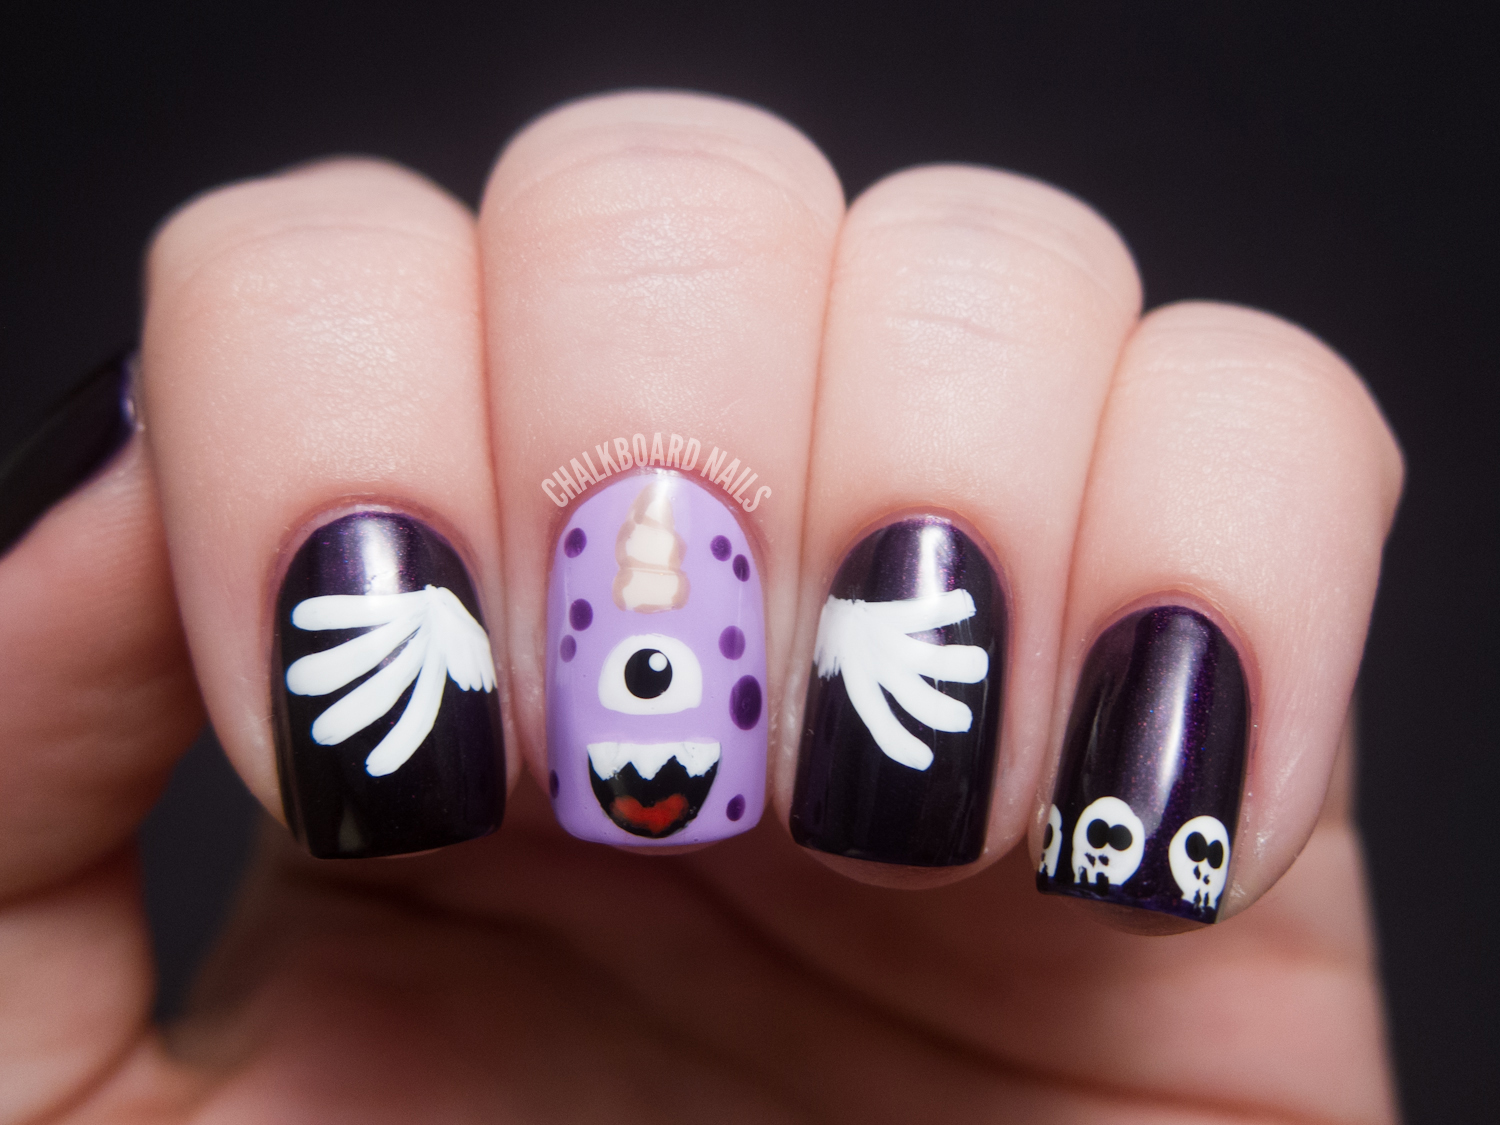 31DC2012: Day 06, Purple Nails | Chalkboard Nails | Nail Art Blog